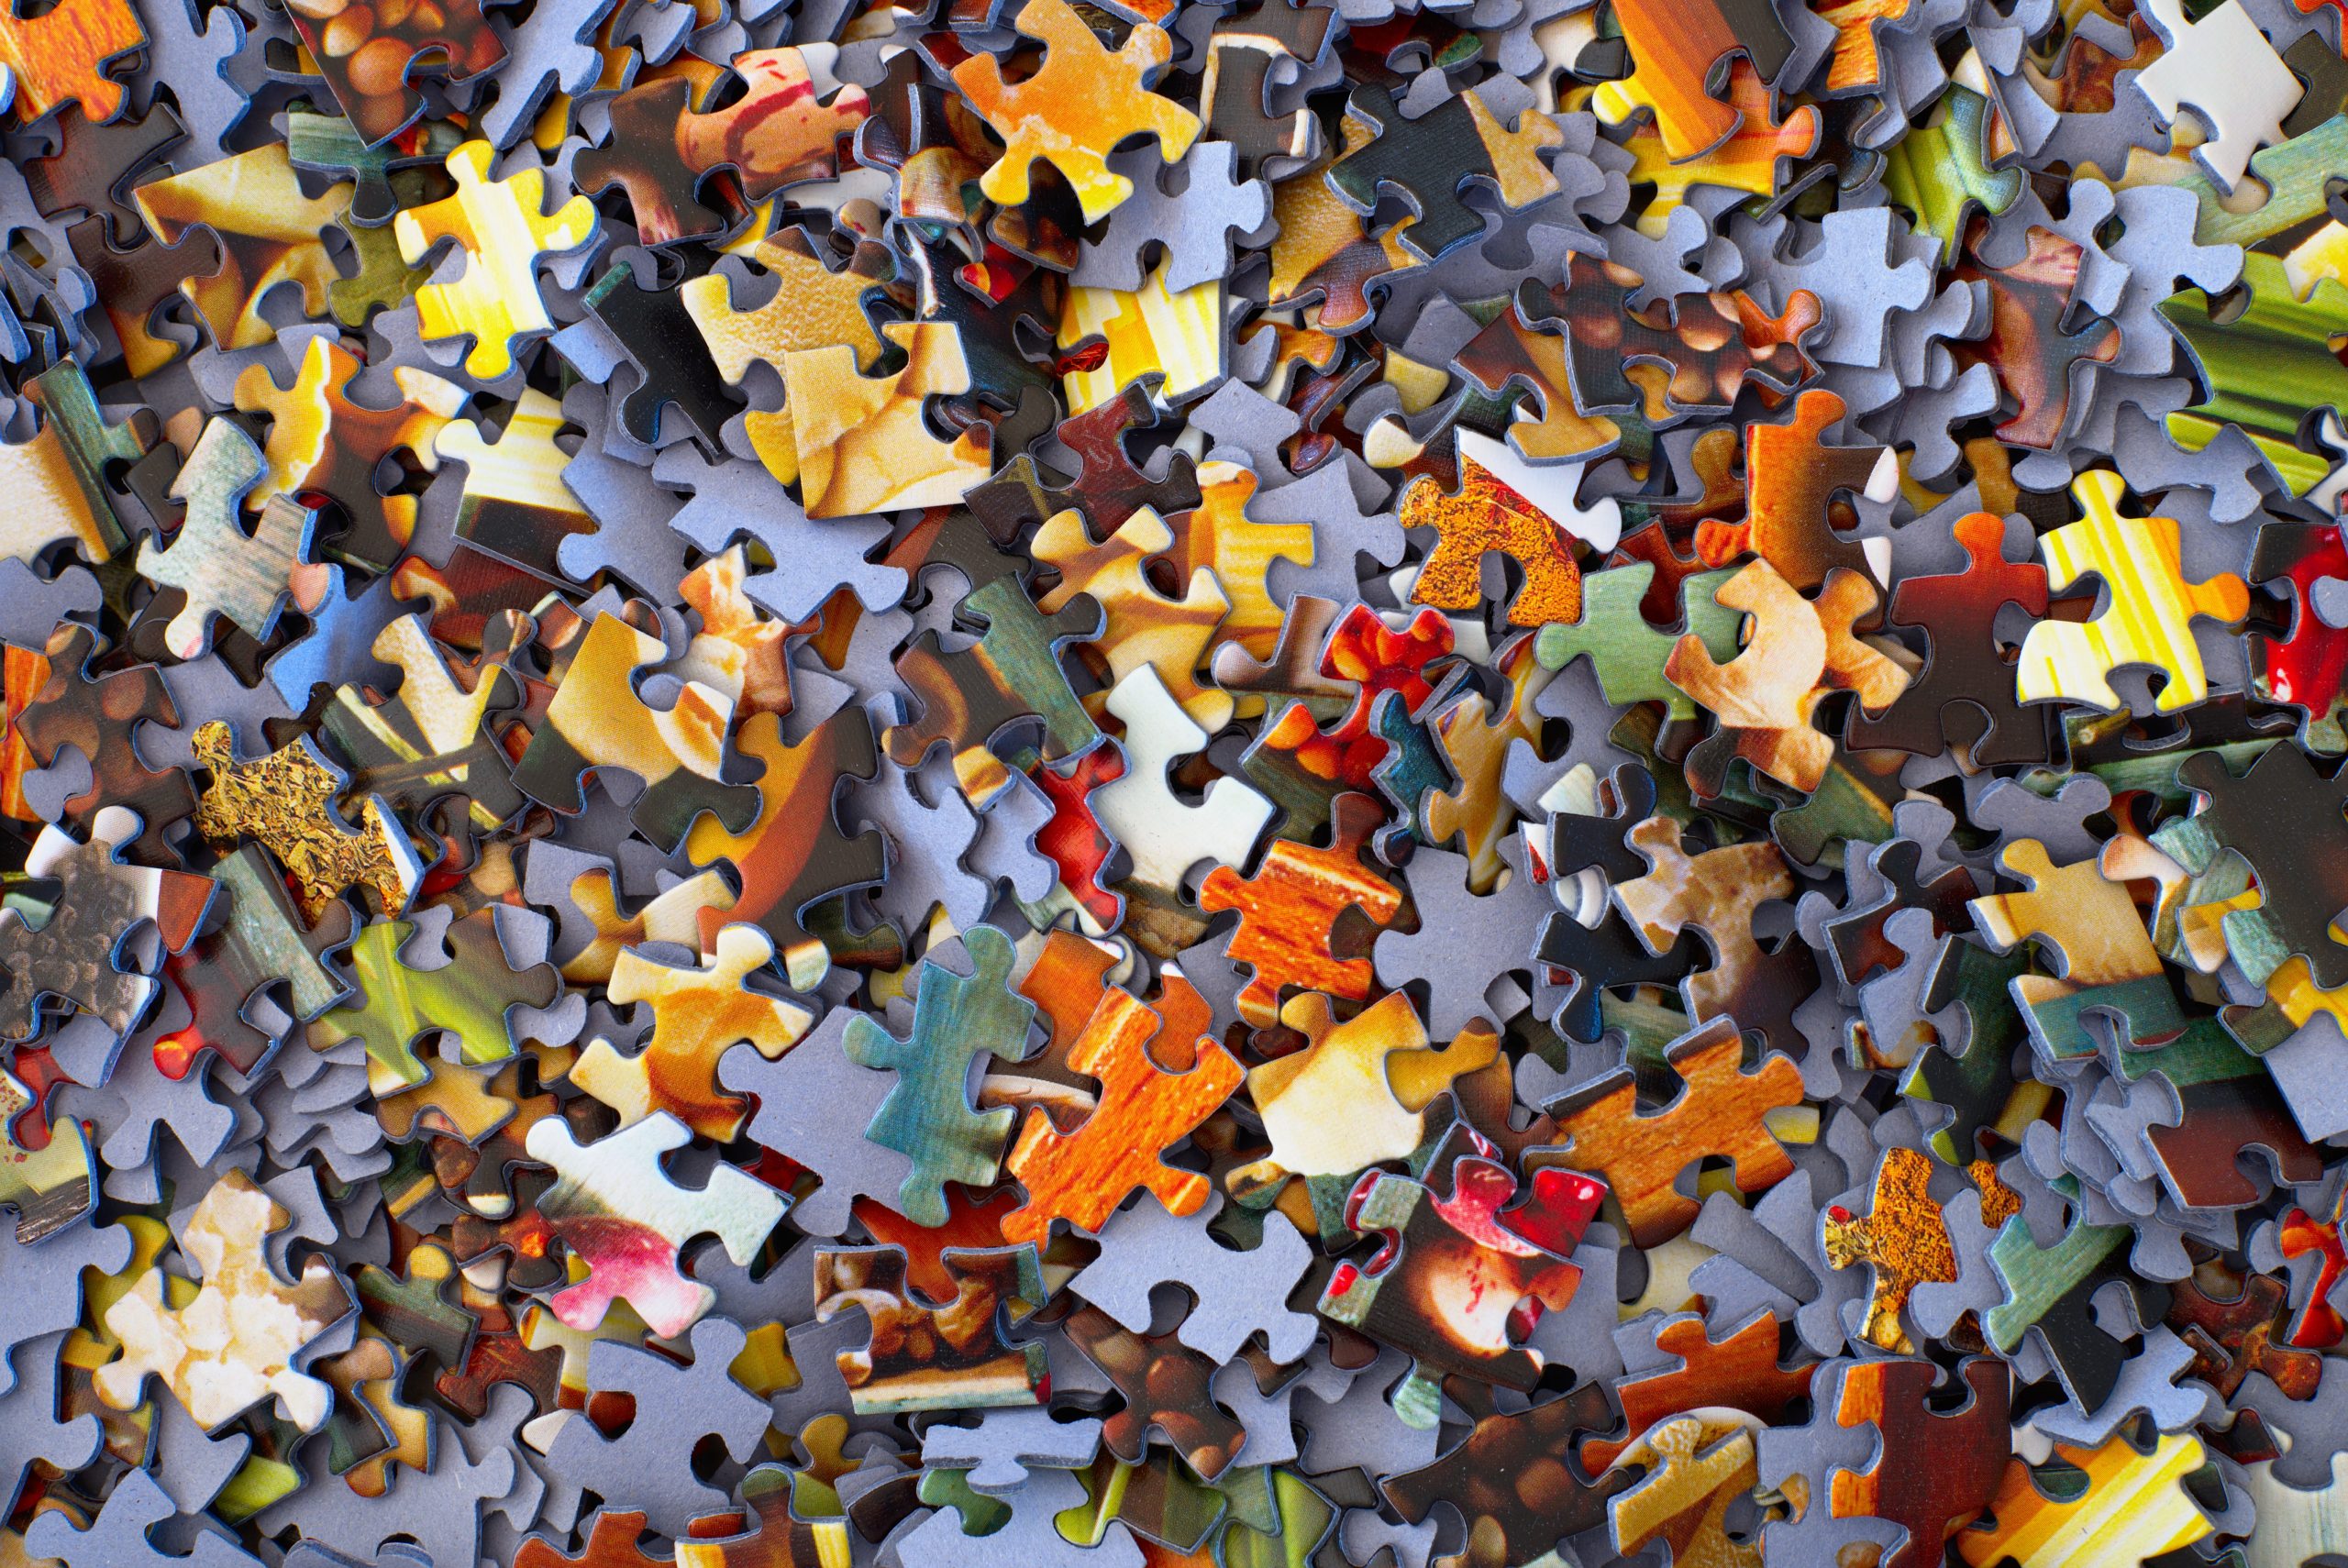 An assortment of jigsaw pieces